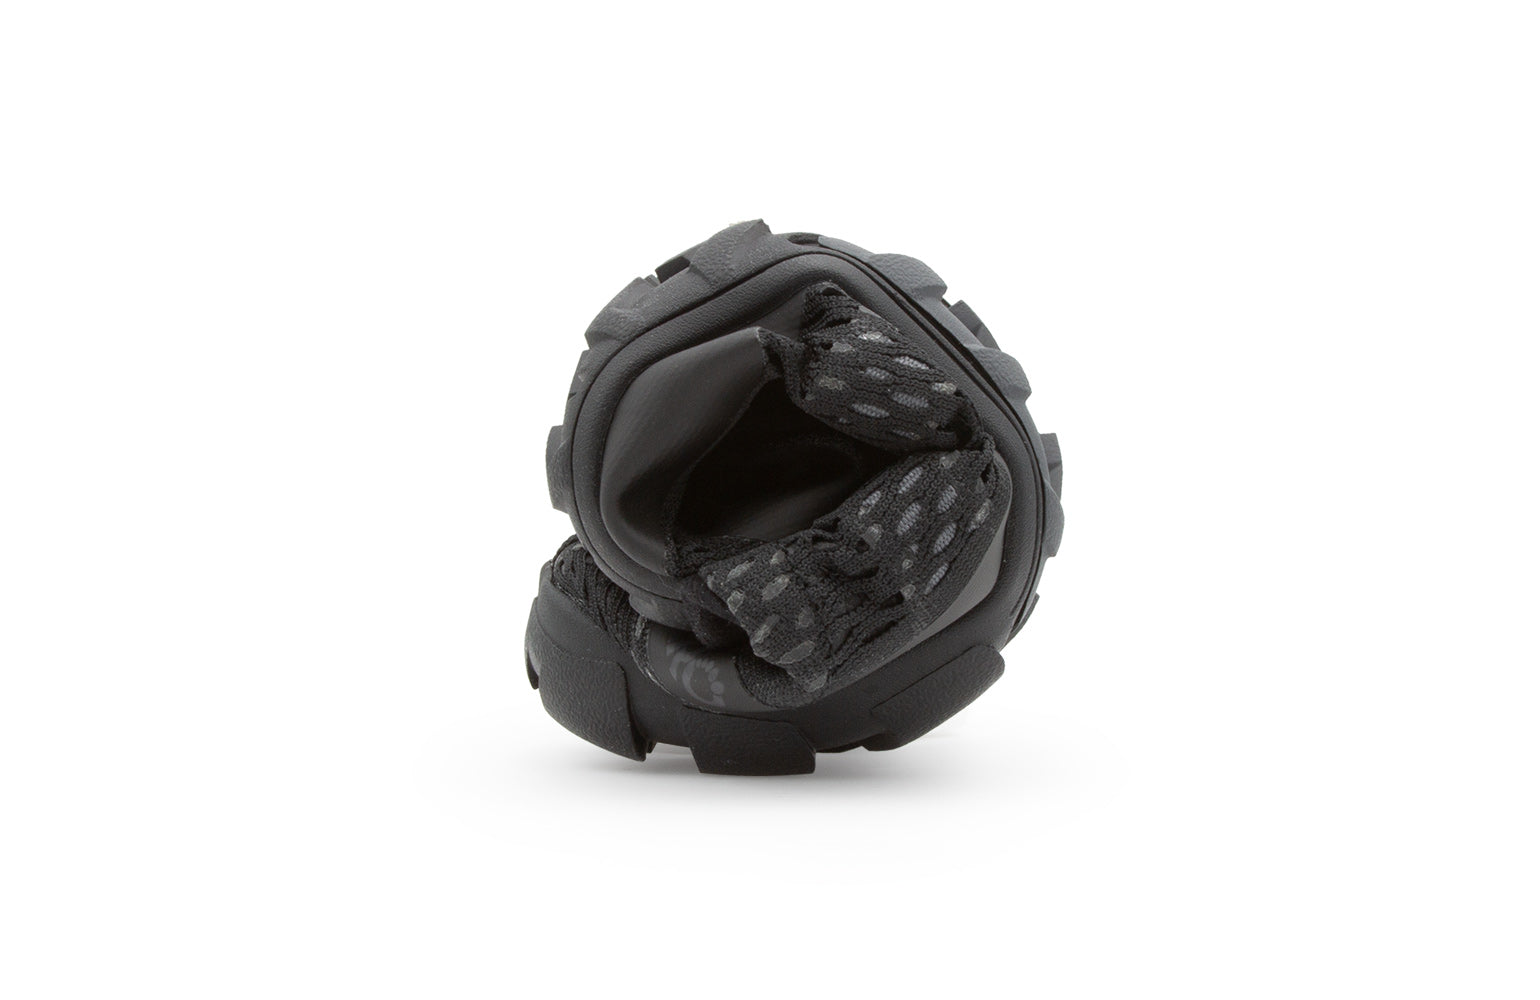 Xero Shoes Aqua X Sport barfods vand træningssko til mænd i farven black, rullet